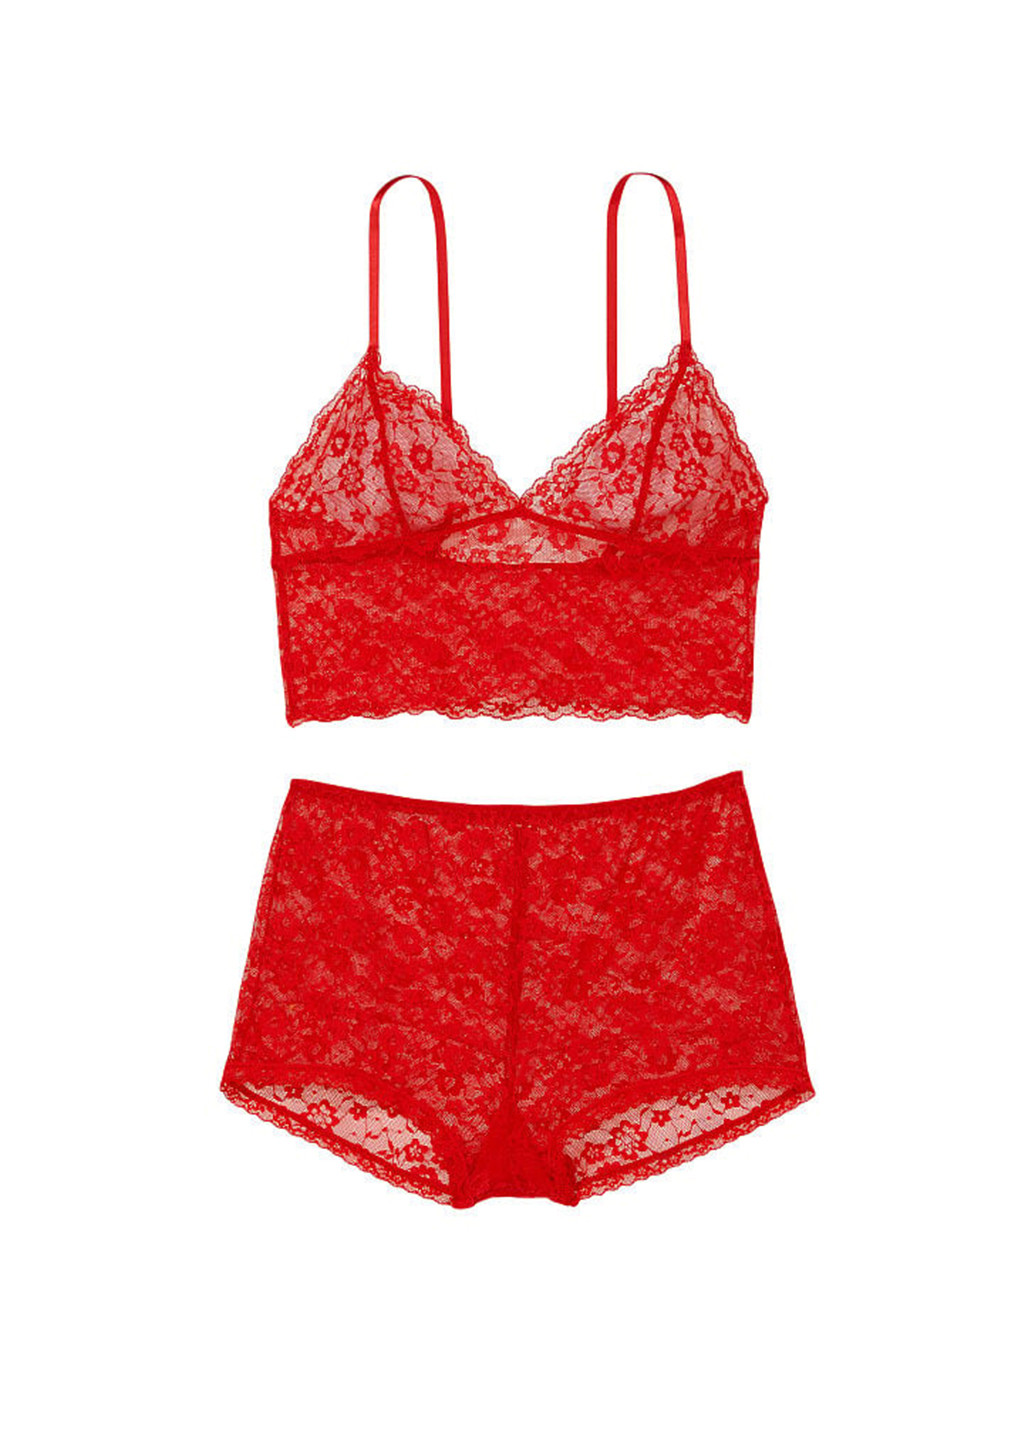 Красная всесезон пижама (топ, шорты) топ + шорты Victoria's Secret